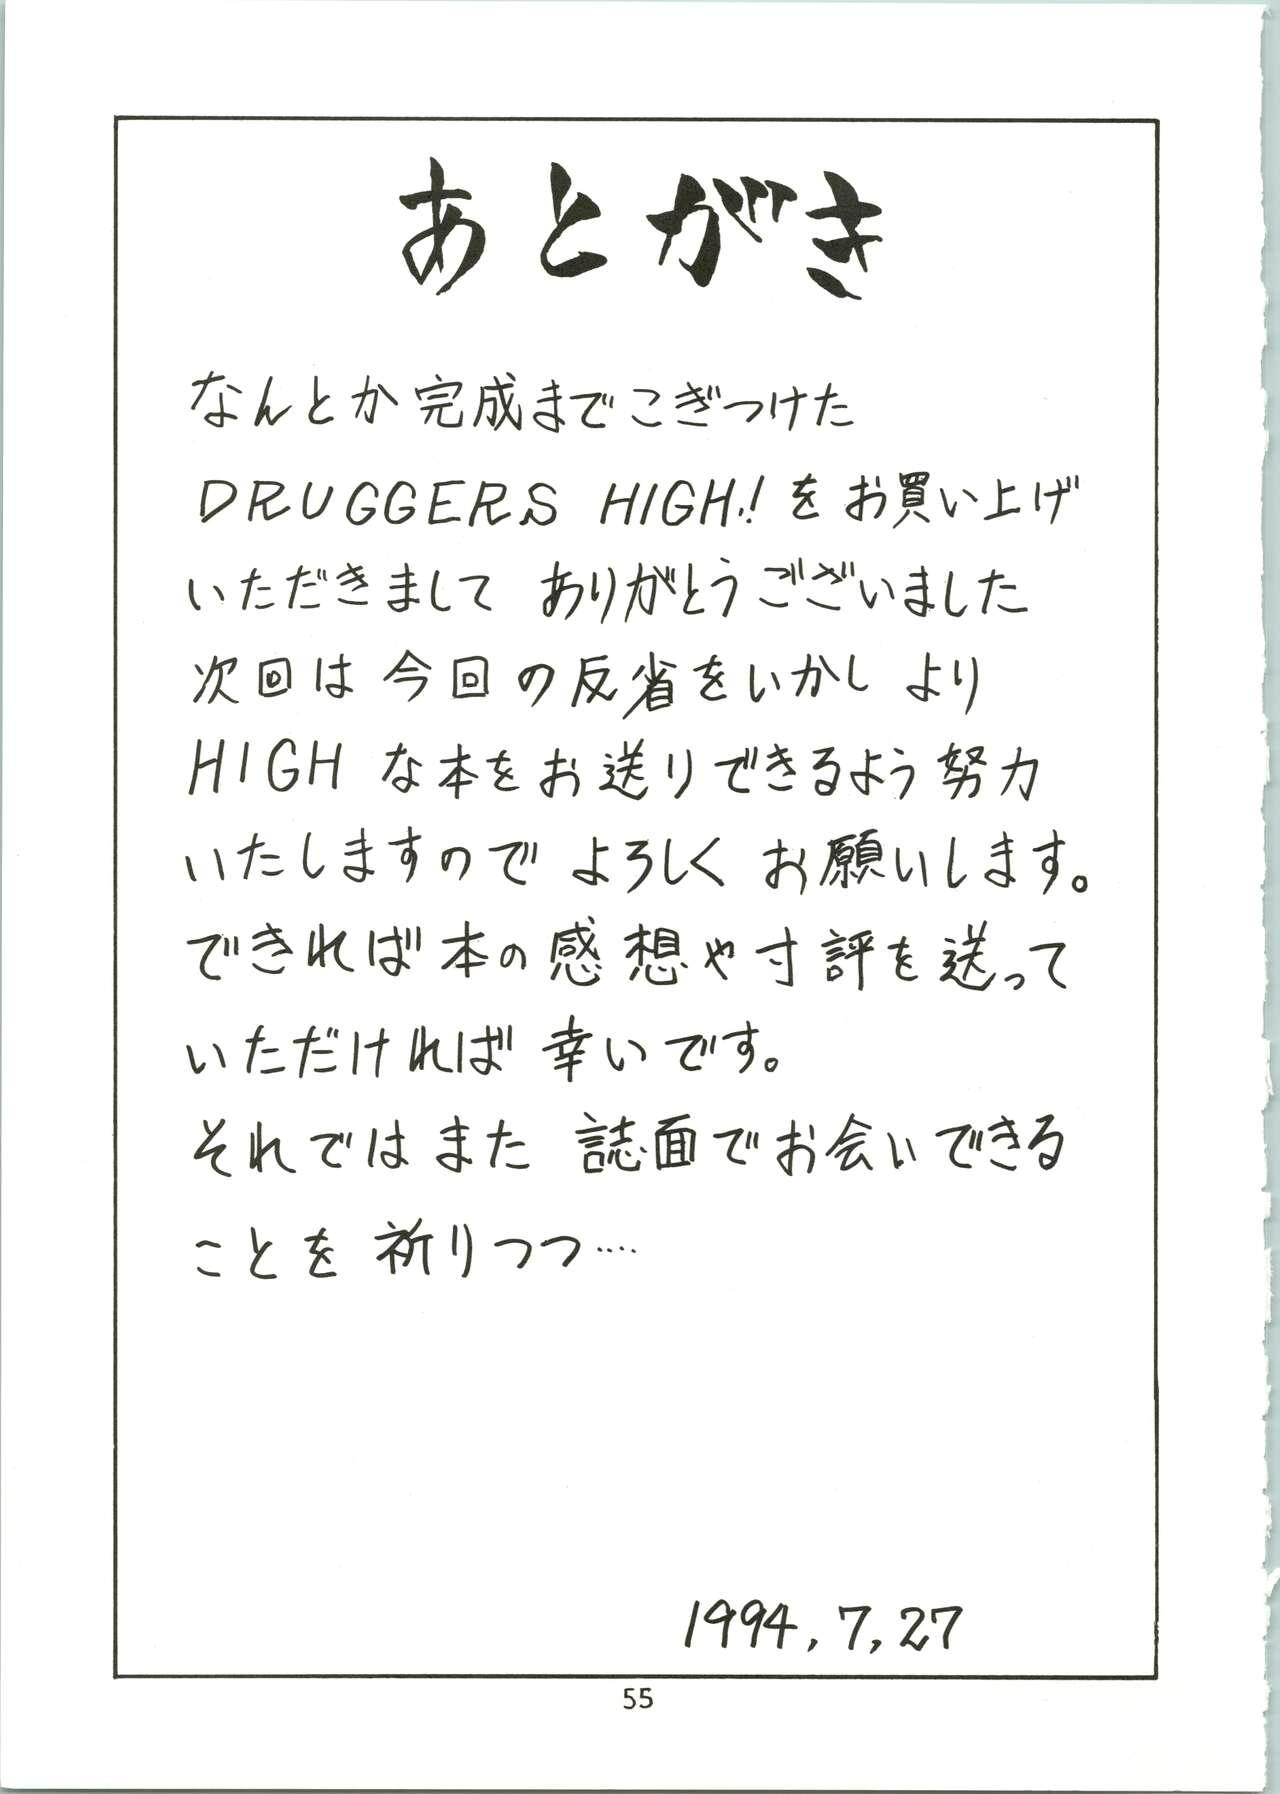 DRUGGERS HIGH!! 56